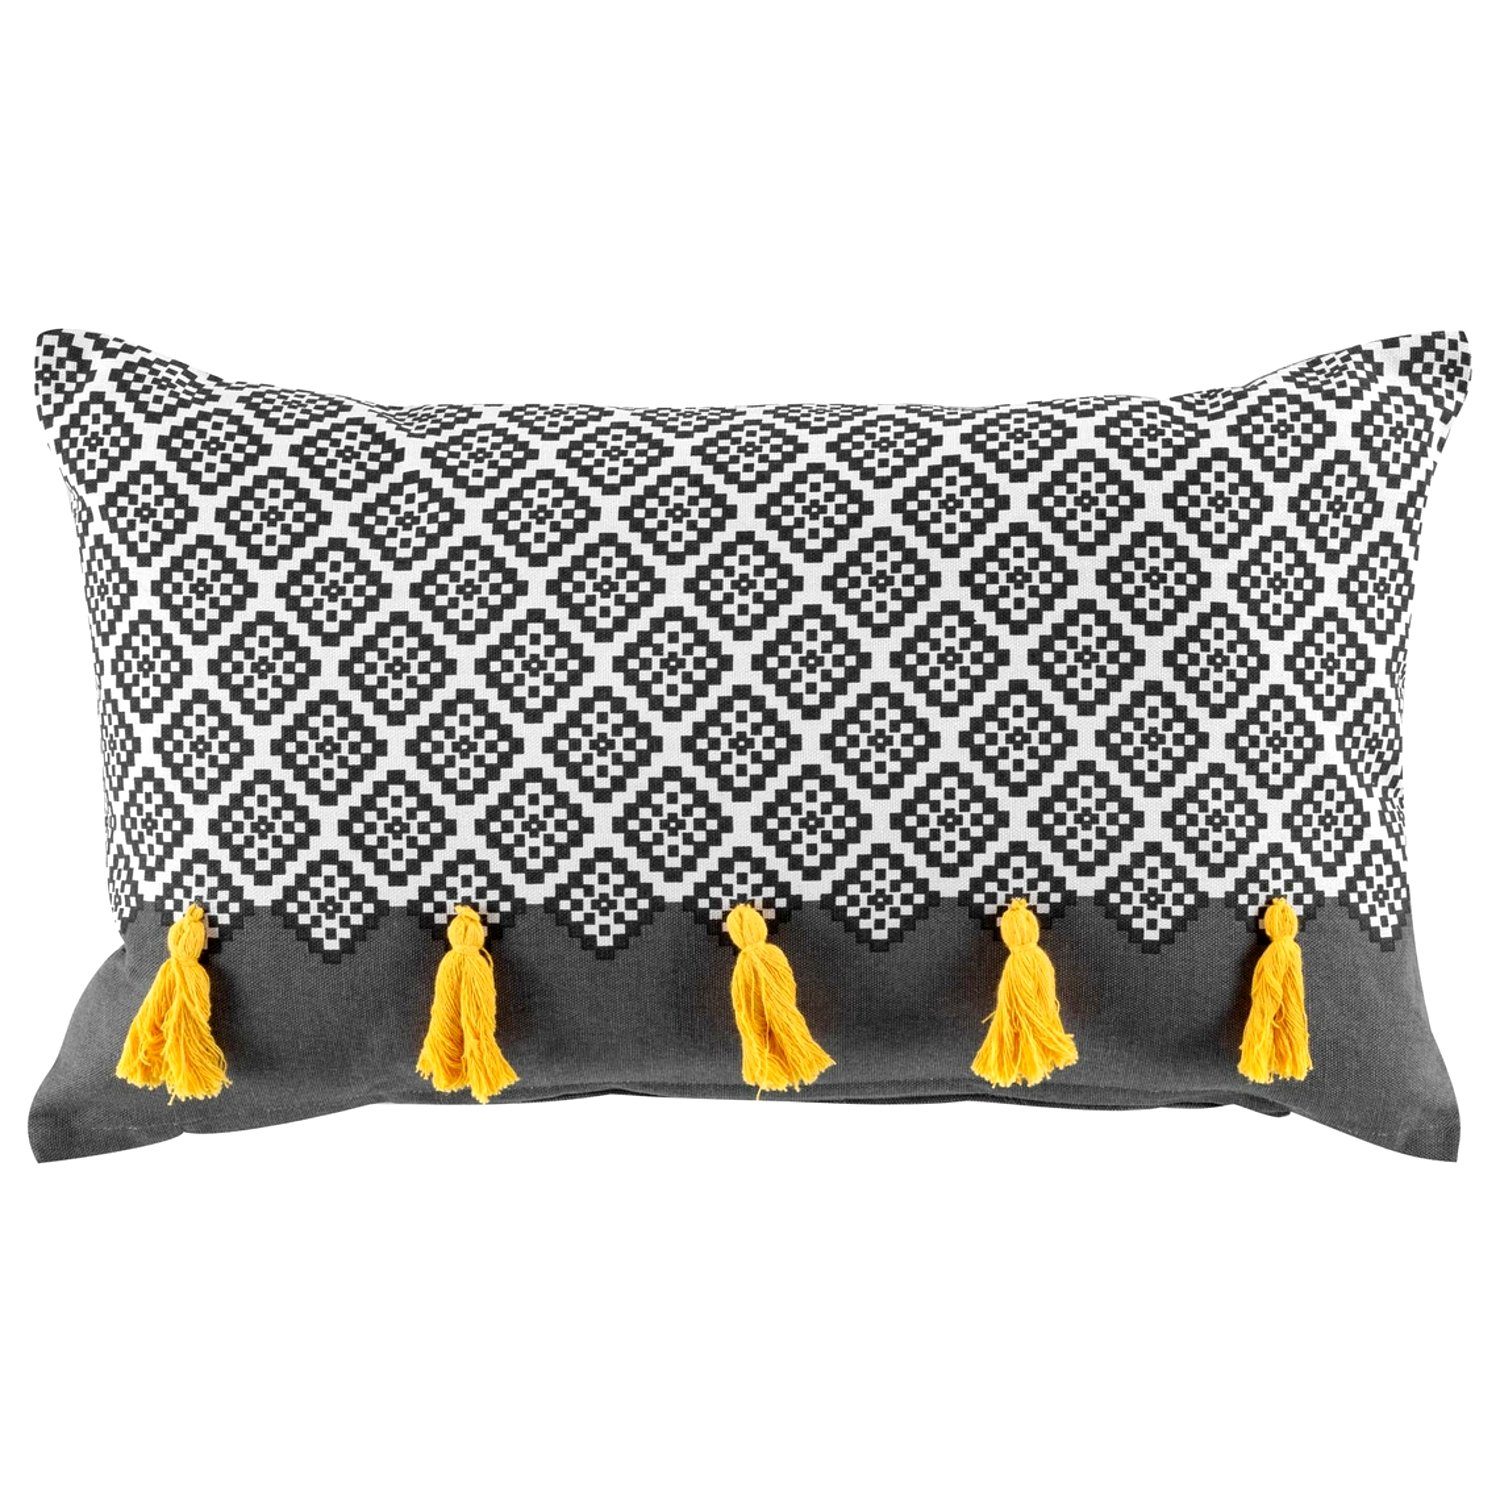 Macosa Home Dekokissen Deko-Kissen grau gelb 30x50 cm Baumwolle modern mit Reißverschluss, inkl. Füllung Sofakissen Dekokissen Zierkissen Couchkissen